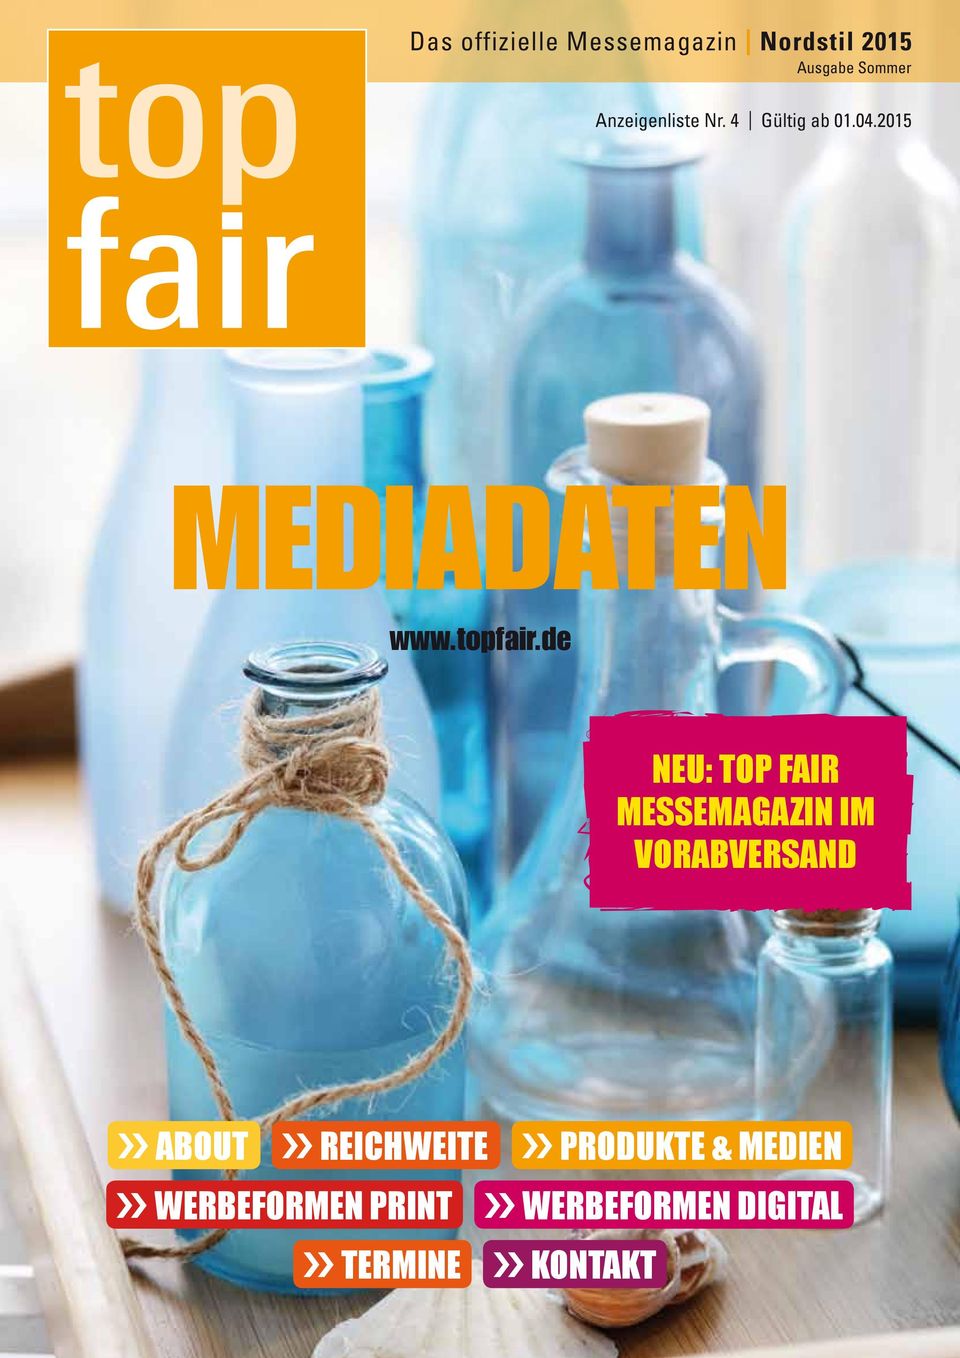 de NEU: Top Fair Messemagazin im Vorabversand about Reichweite